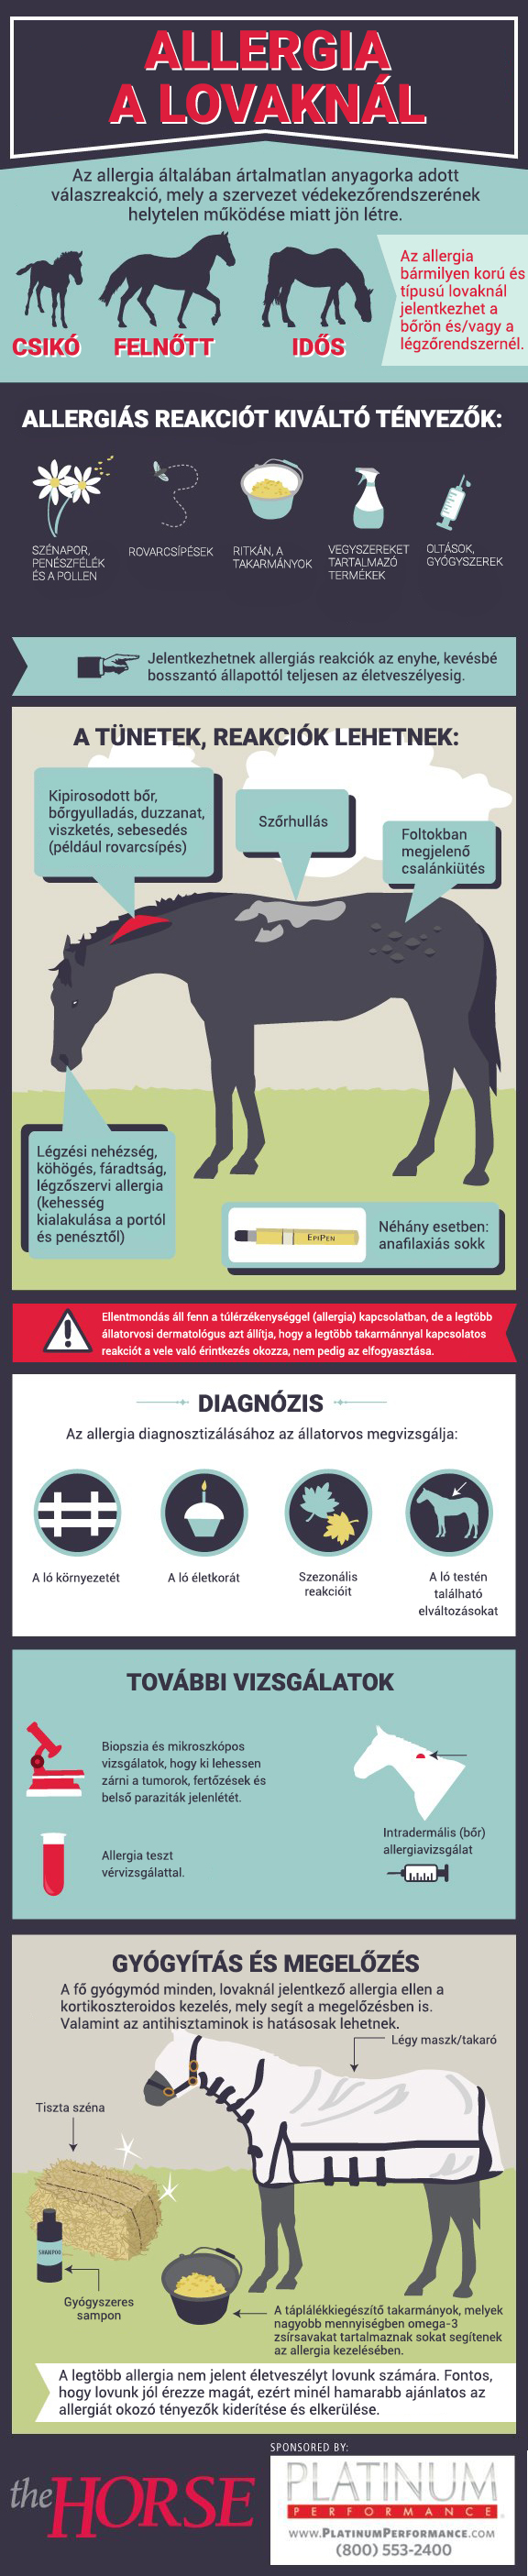 Infografika - Allergia a lovaknál